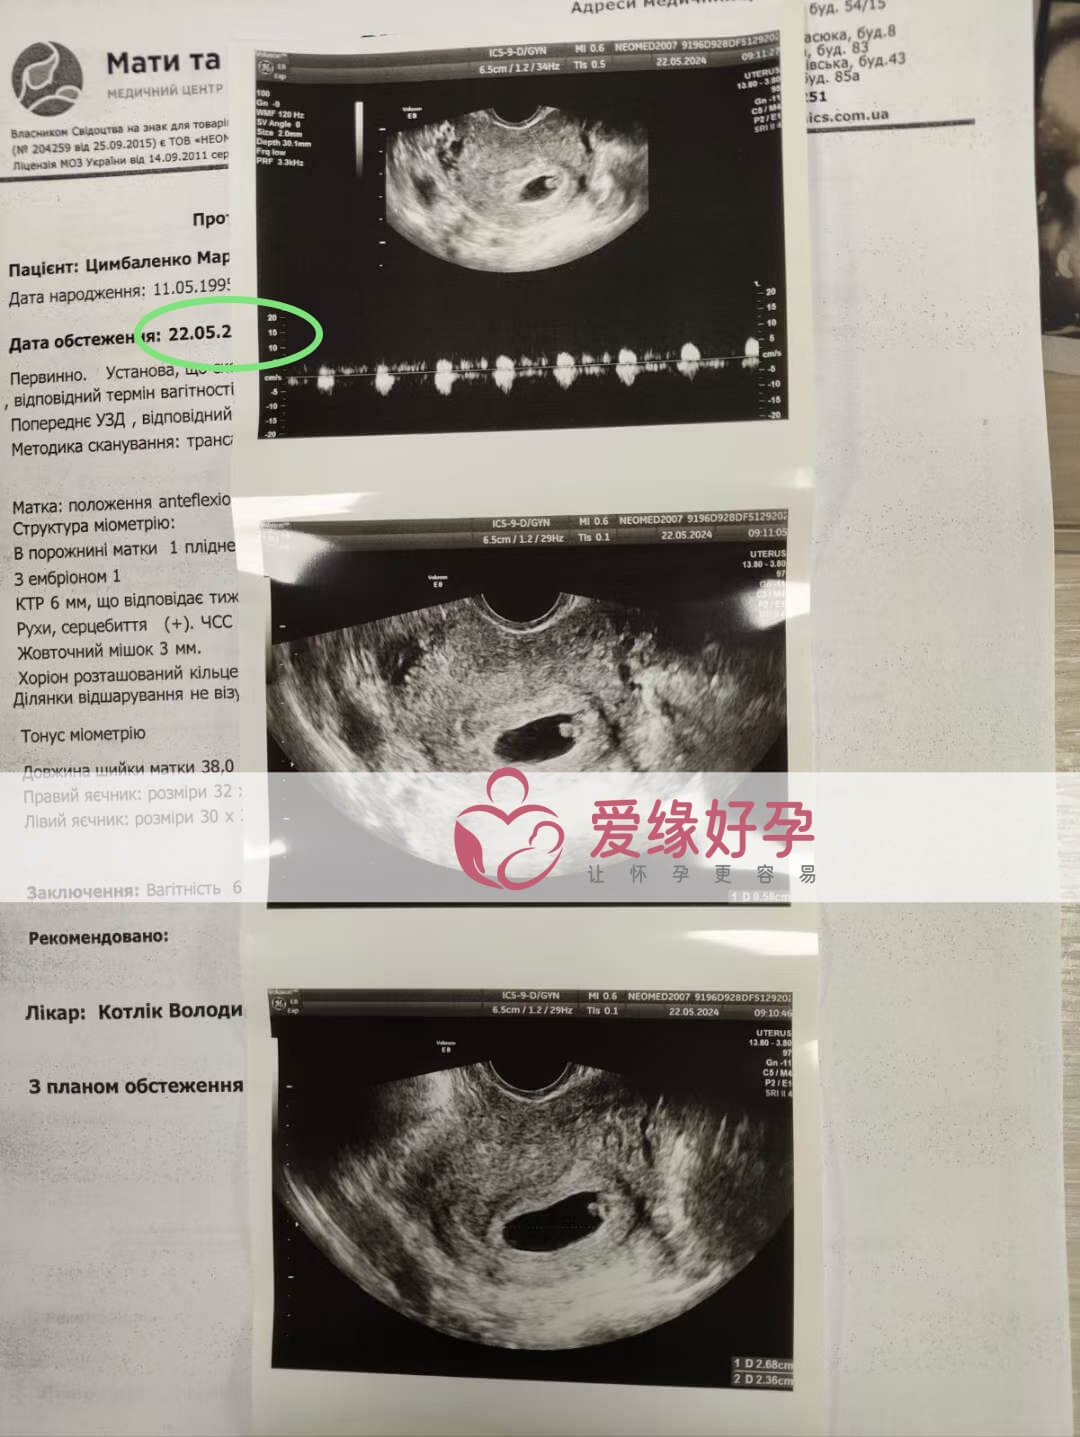 爱缘好孕:乌克兰爱心妈妈孕6周产检顺利通过